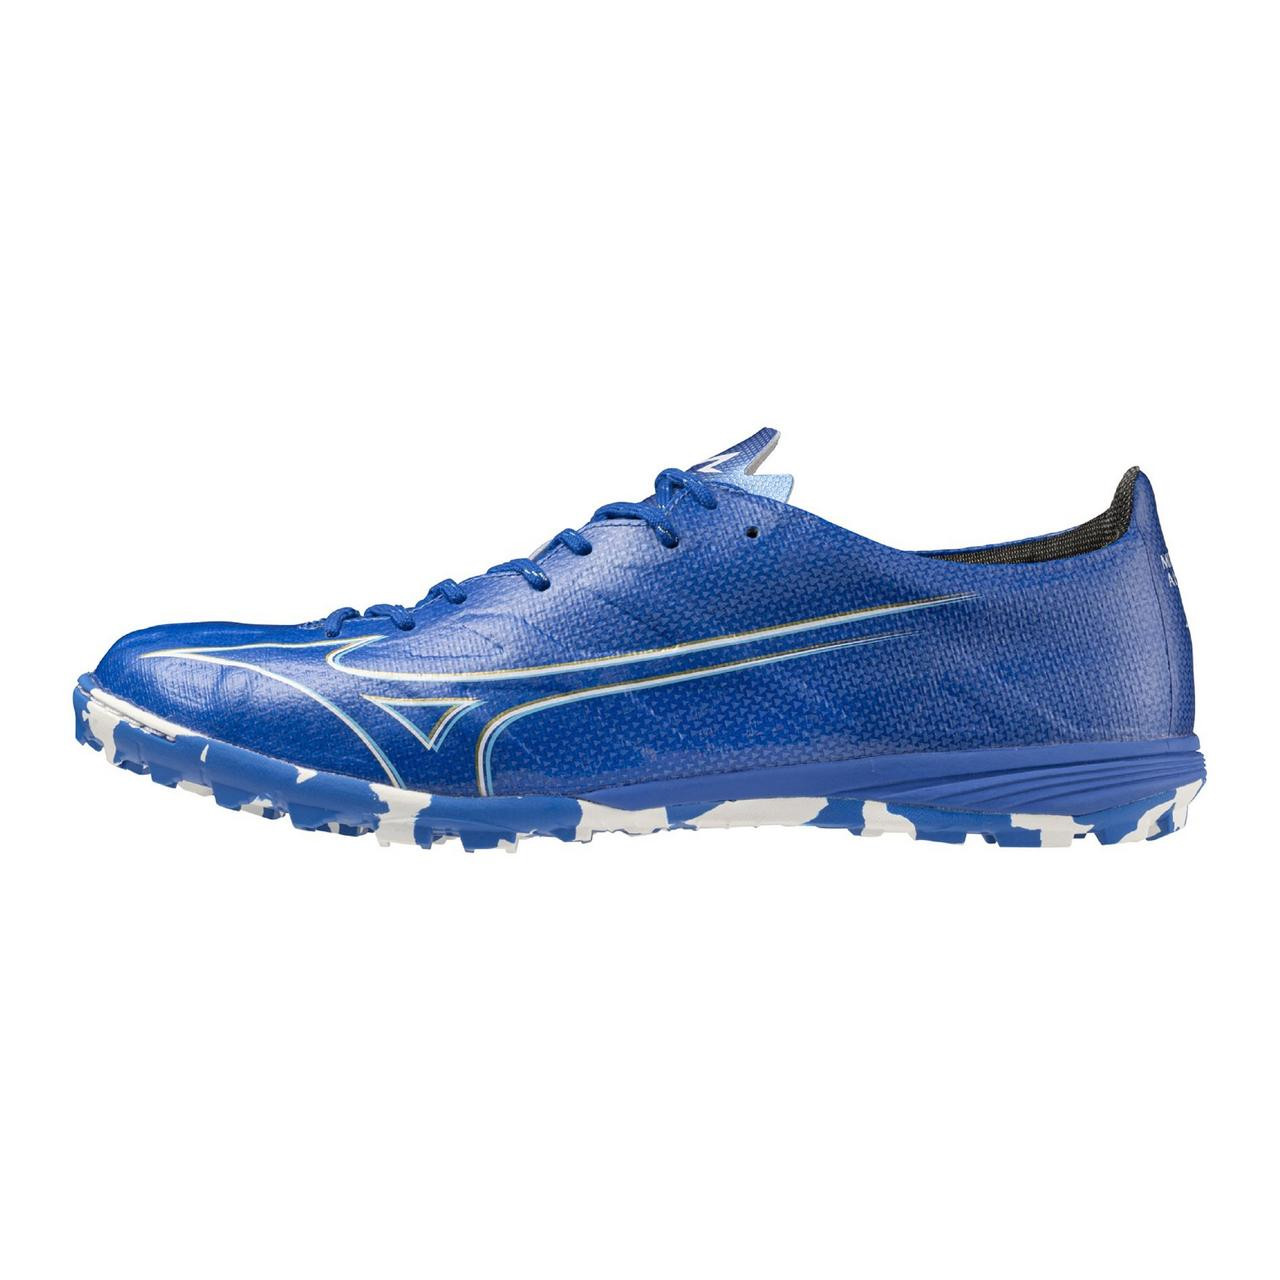 Mizuno Alpha Pro AS Soccer Shoe - Mizuno USA